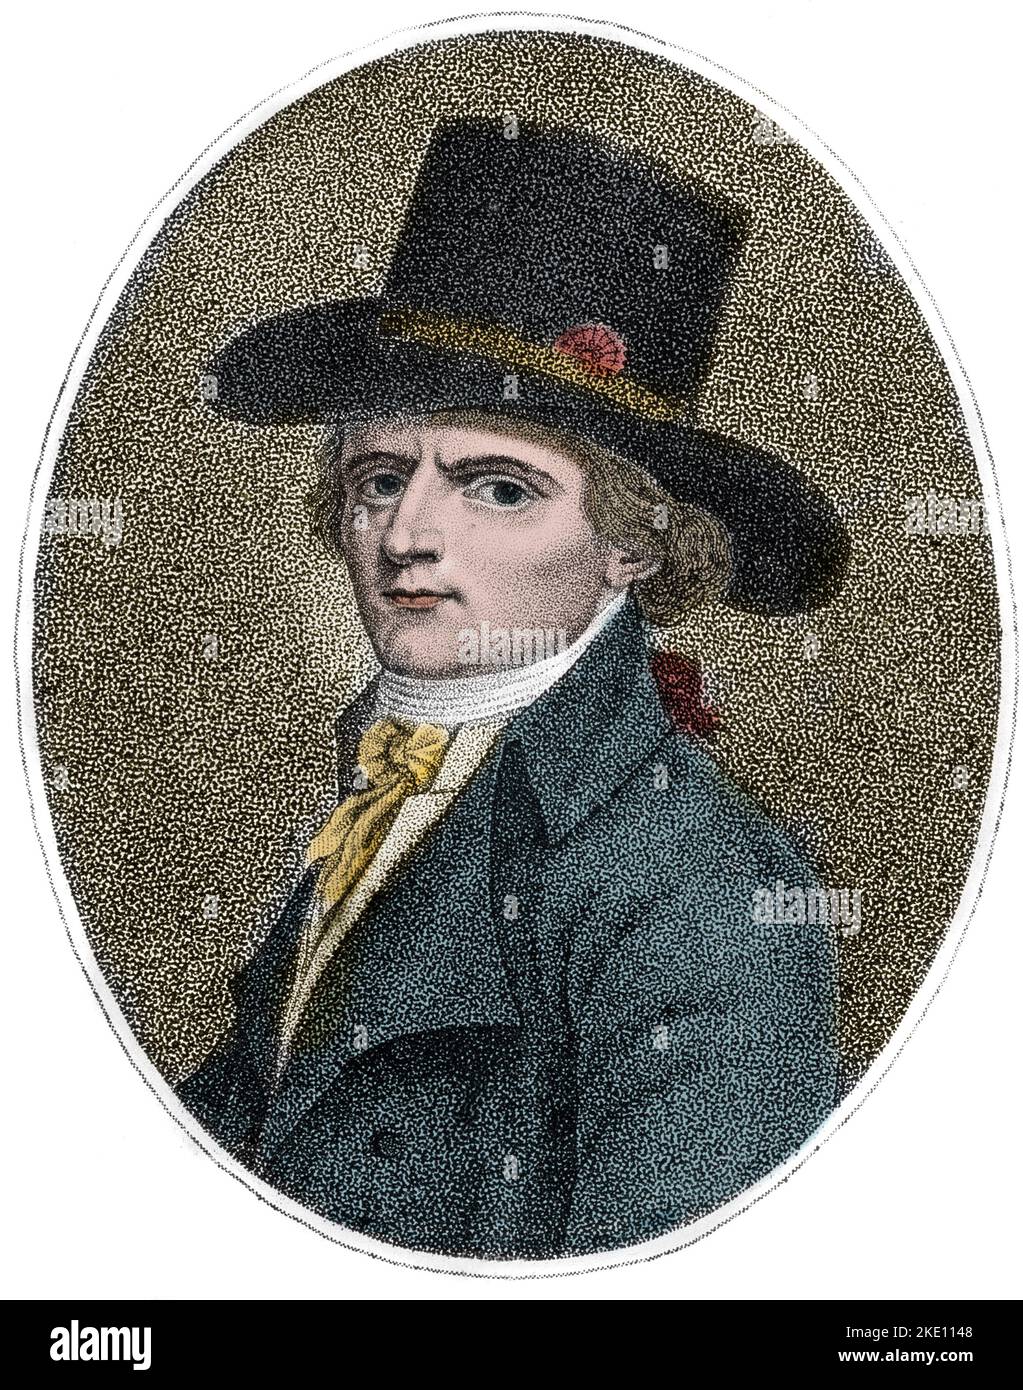 Portrait de Francois Babeuf dit Gracchus (1760-1797), revolutionnaire francais - Gravure de Bonneville, 1794. Stockfoto